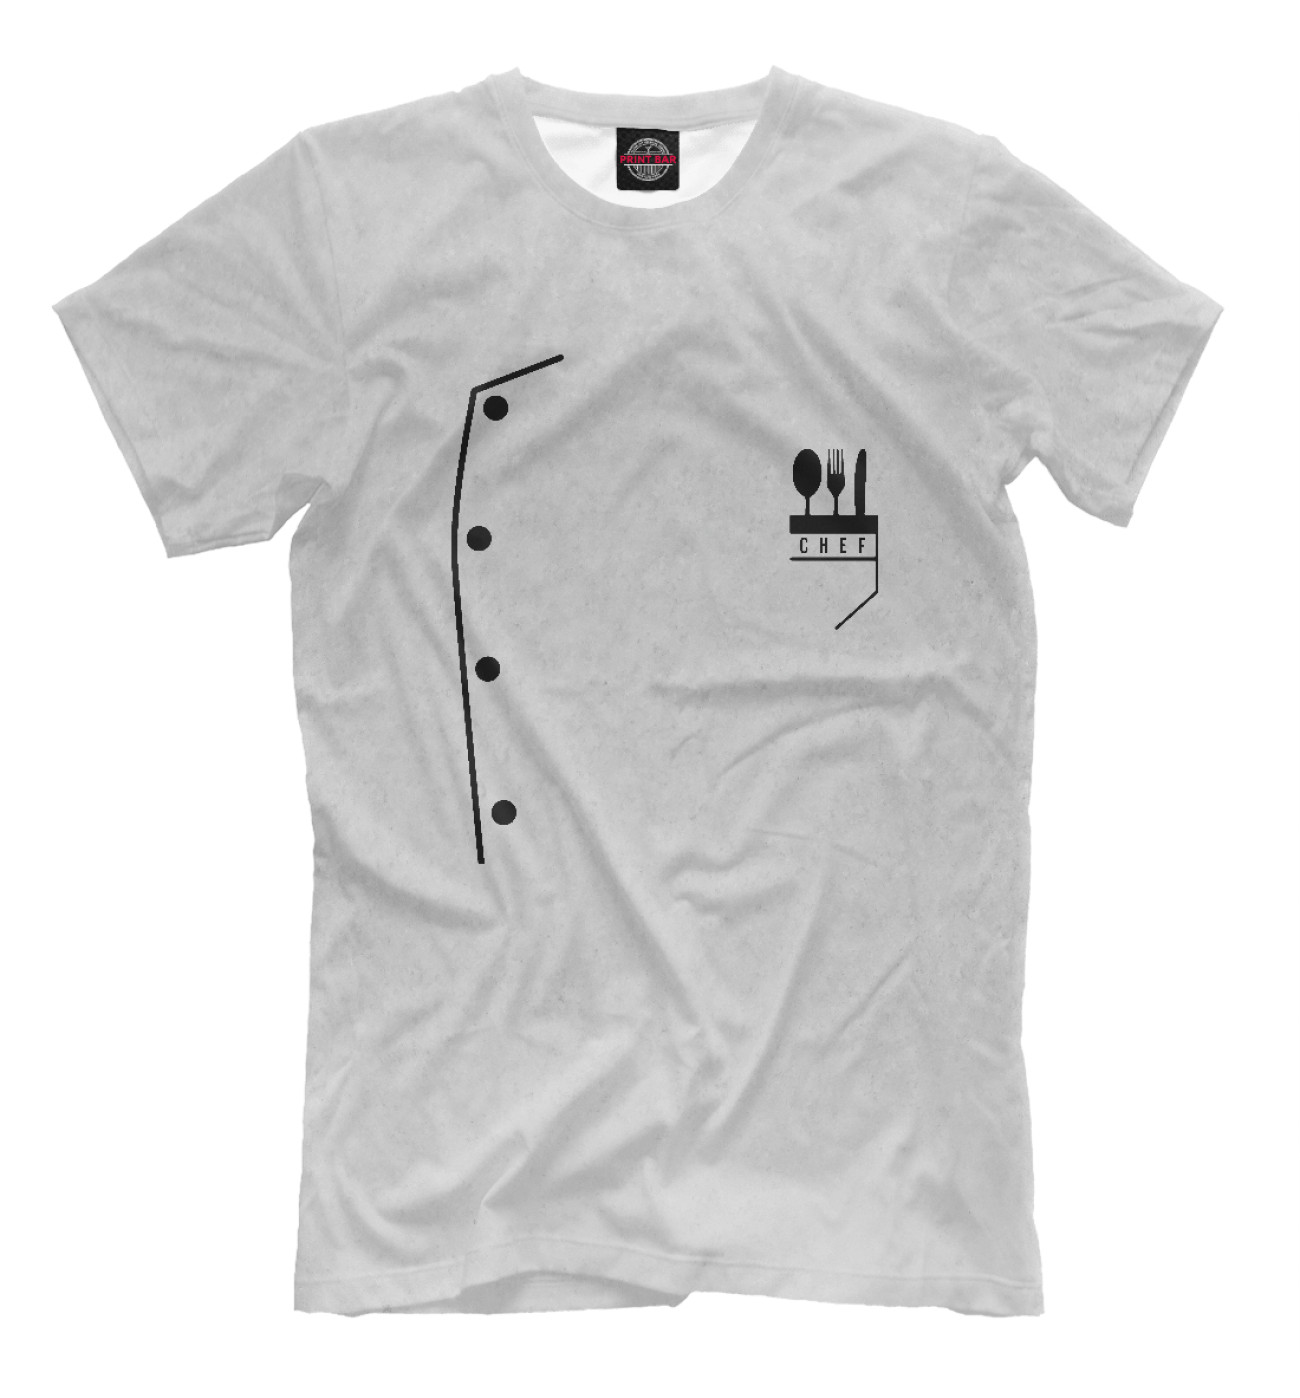 Мужская Футболка Chef Uniform, артикул: PVR-329704-fut-2